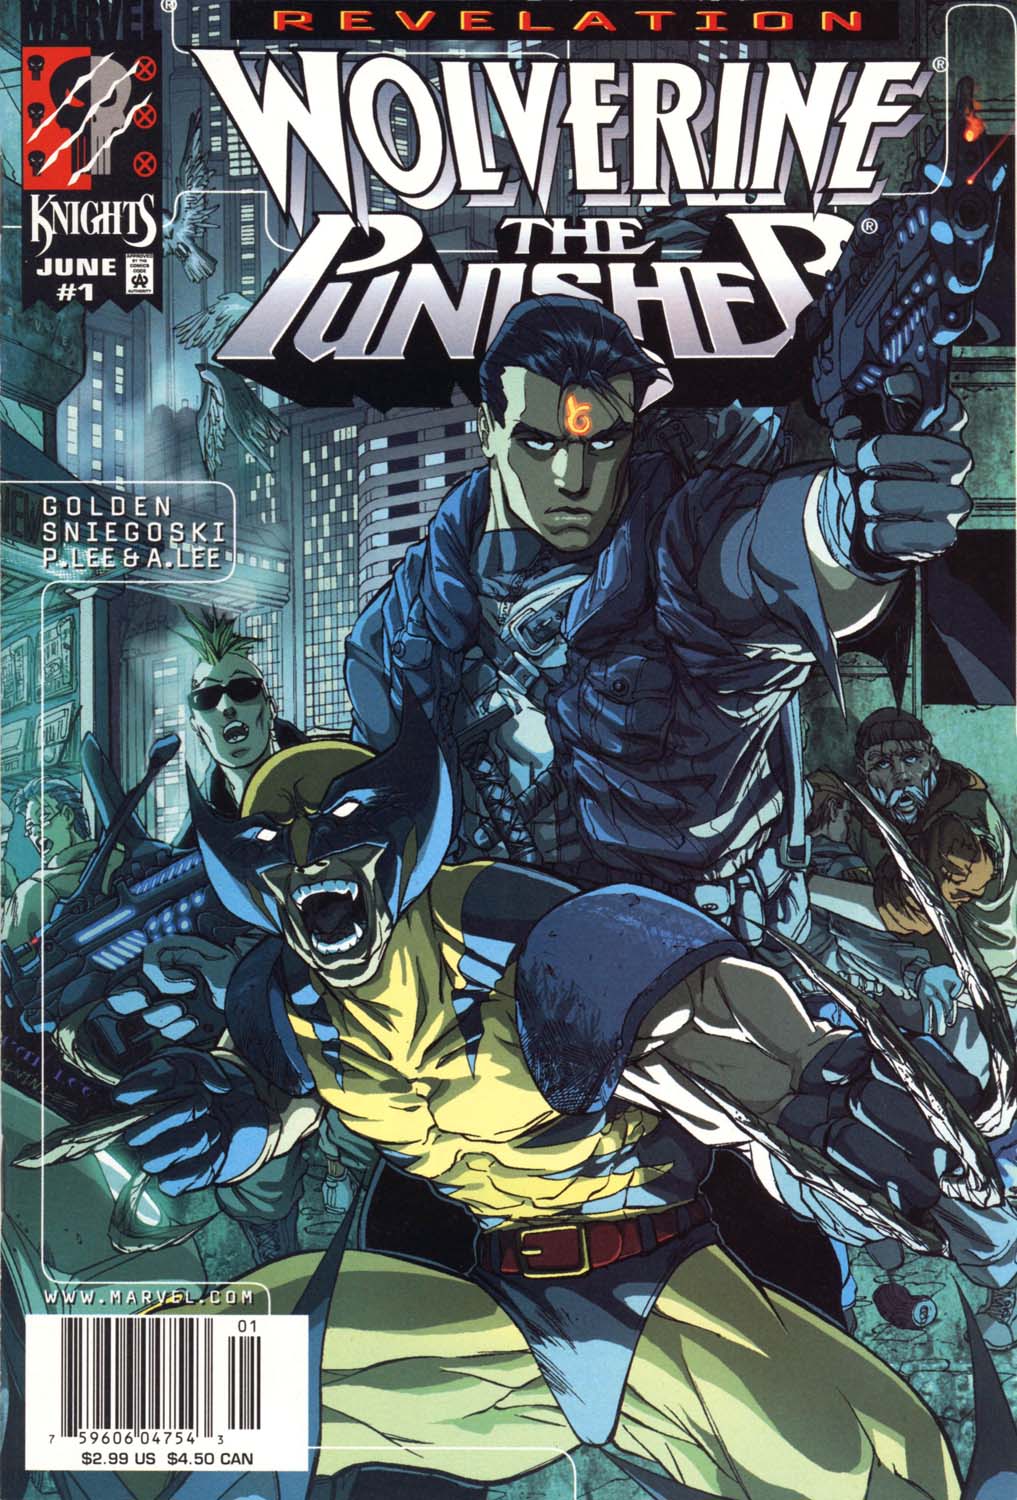 Wolverine/Punisher: Revelation issue 1 - Page 1